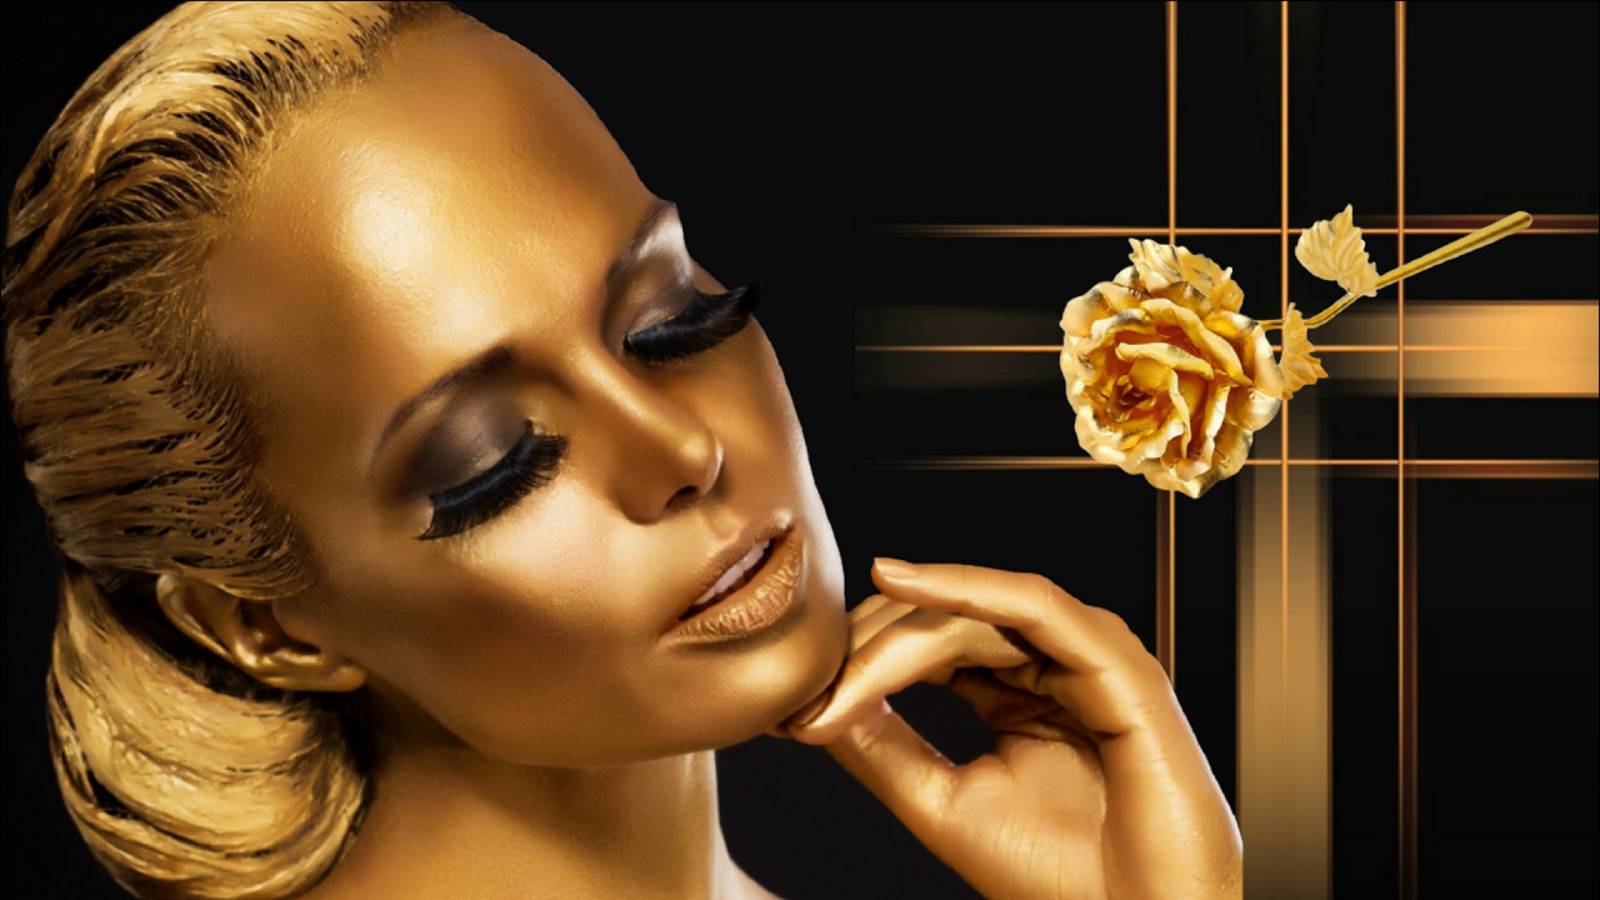 GOLDEN LADY… Женская красота в искусстве золотой боди-арт… Романтическая музыка Эдгара Туниянца